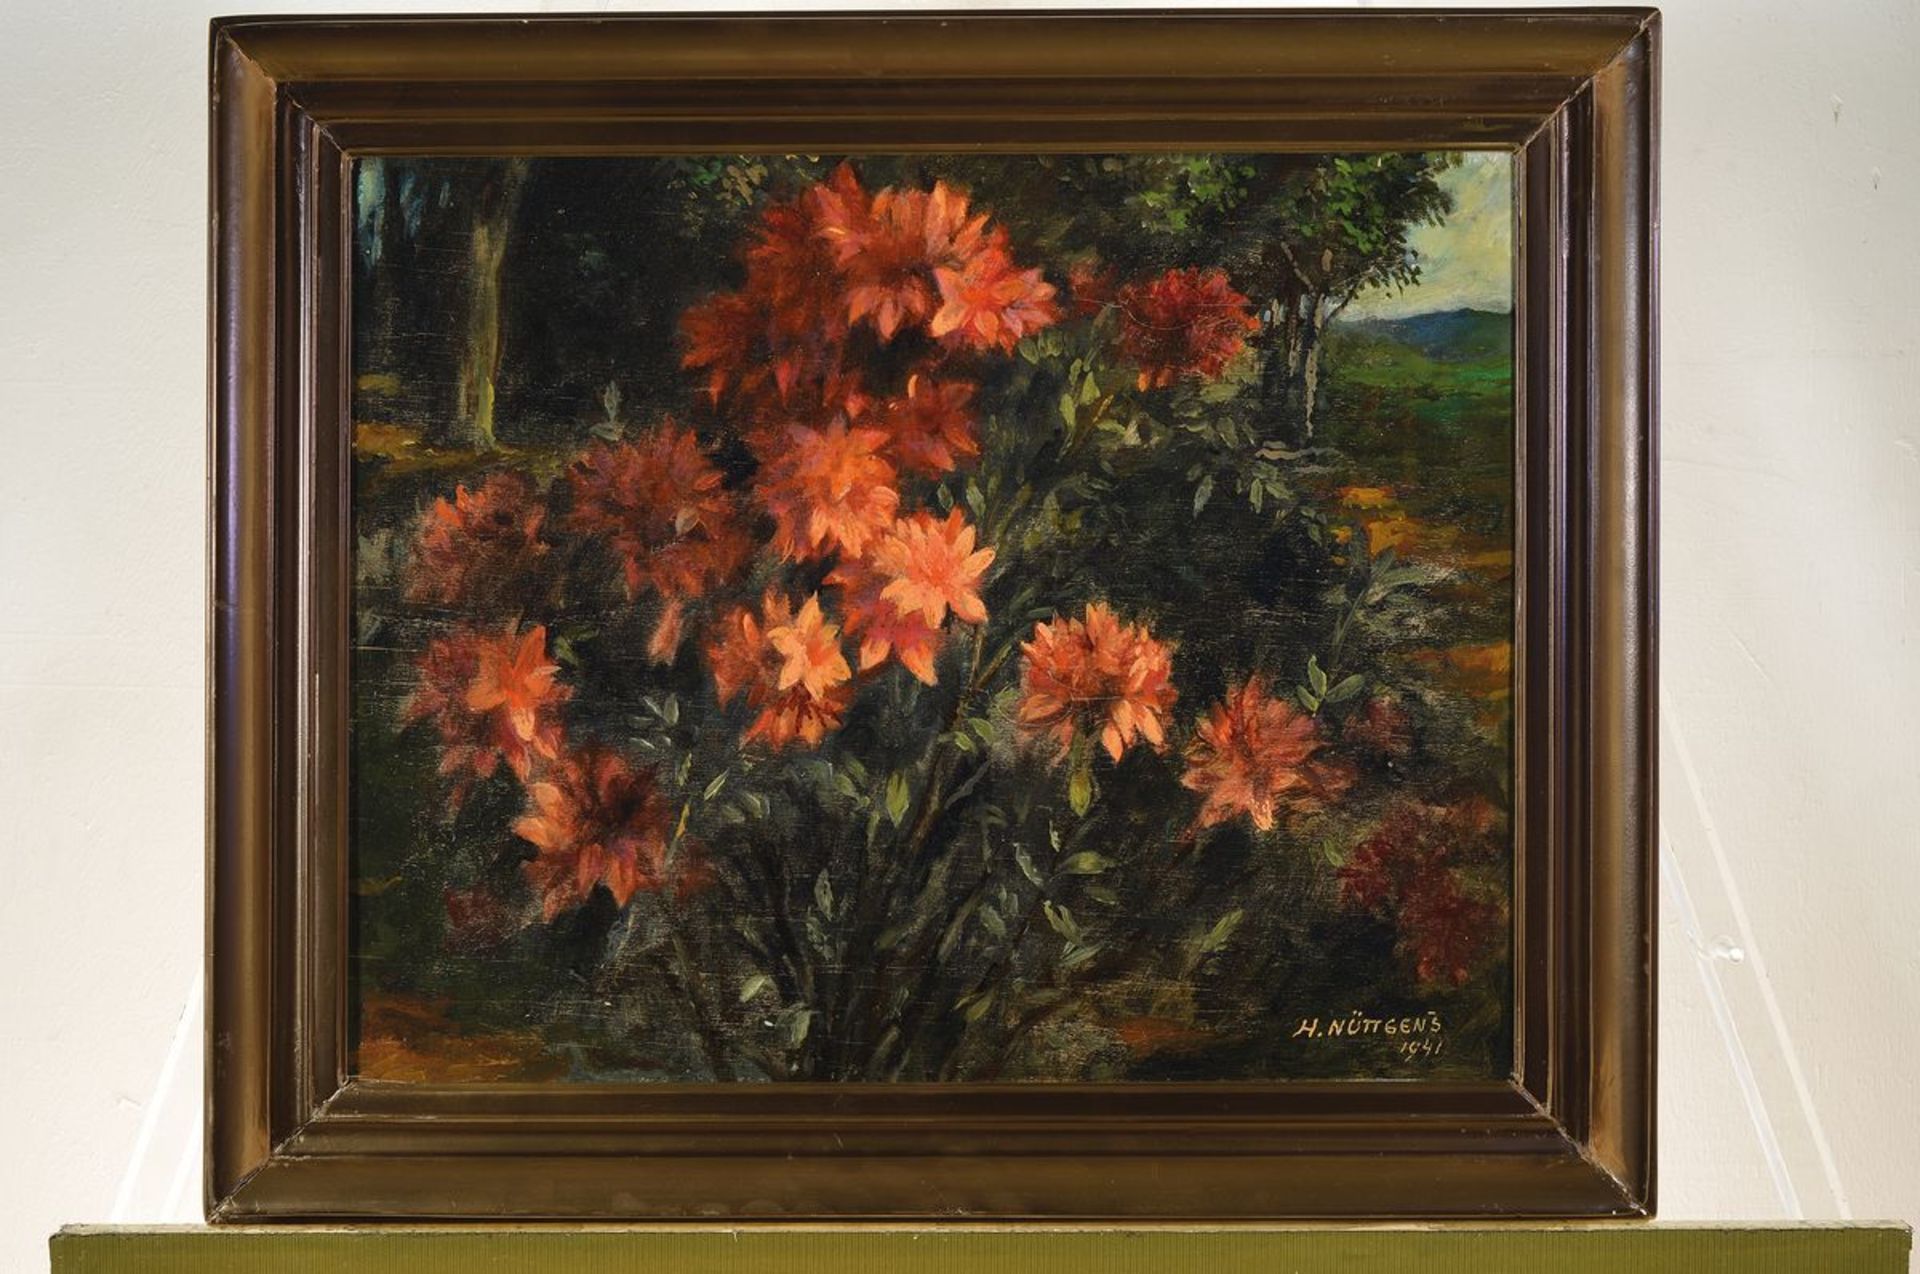 Heinrich Nüttgens, 1866 Aachen-1951 Düsseldorf, flowering bush in garden, oil / wood, signed lower - Image 3 of 3